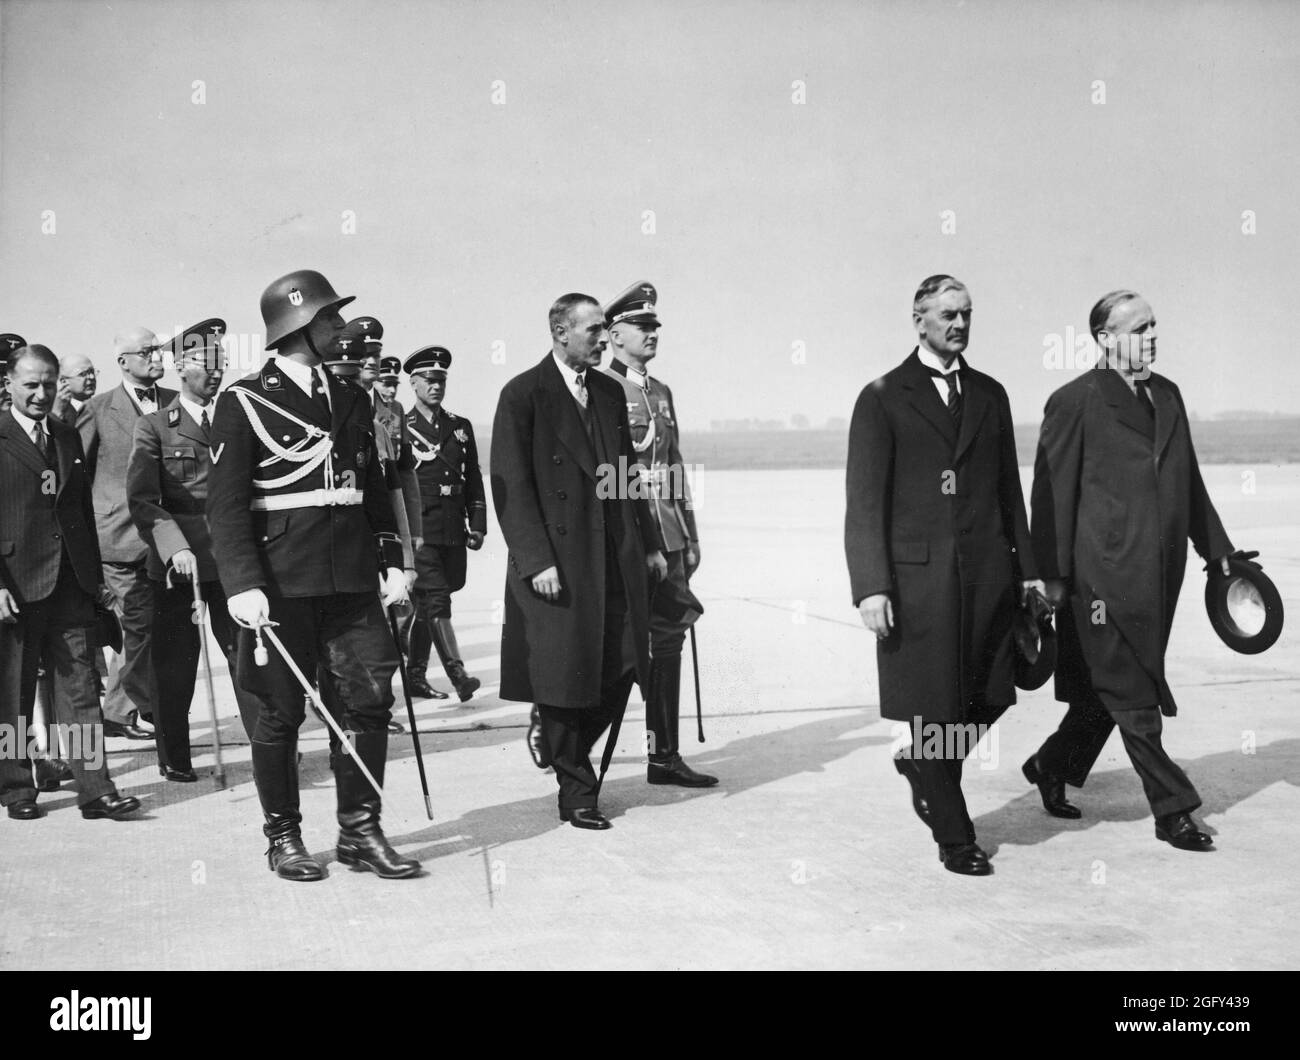 Il primo ministro britannico Neville Chamberlain presso il campo aereo di Monaco Oberwiesenfeld il 29 settembre. 1938. Neville Henderson cammina con Joachim von Ribbentrop (Ministro degli Affari Esteri della Germania nazista) Foto Stock